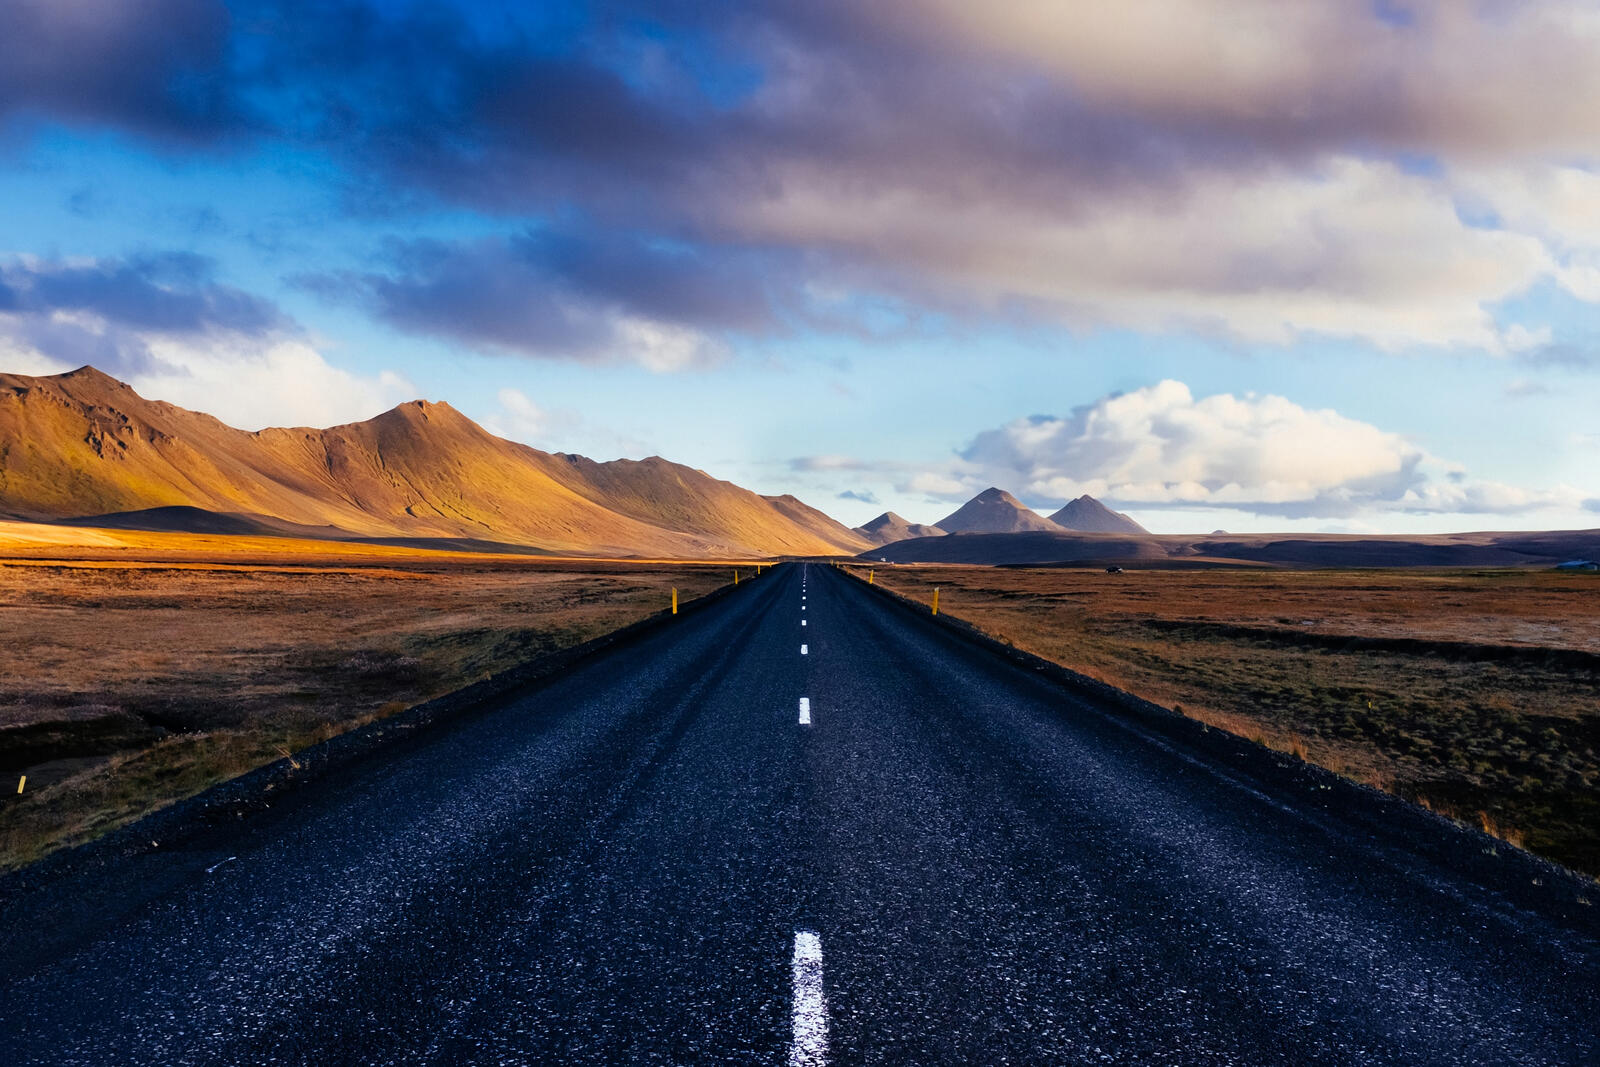 Обои дорога Исландия фотографии на рабочий стол